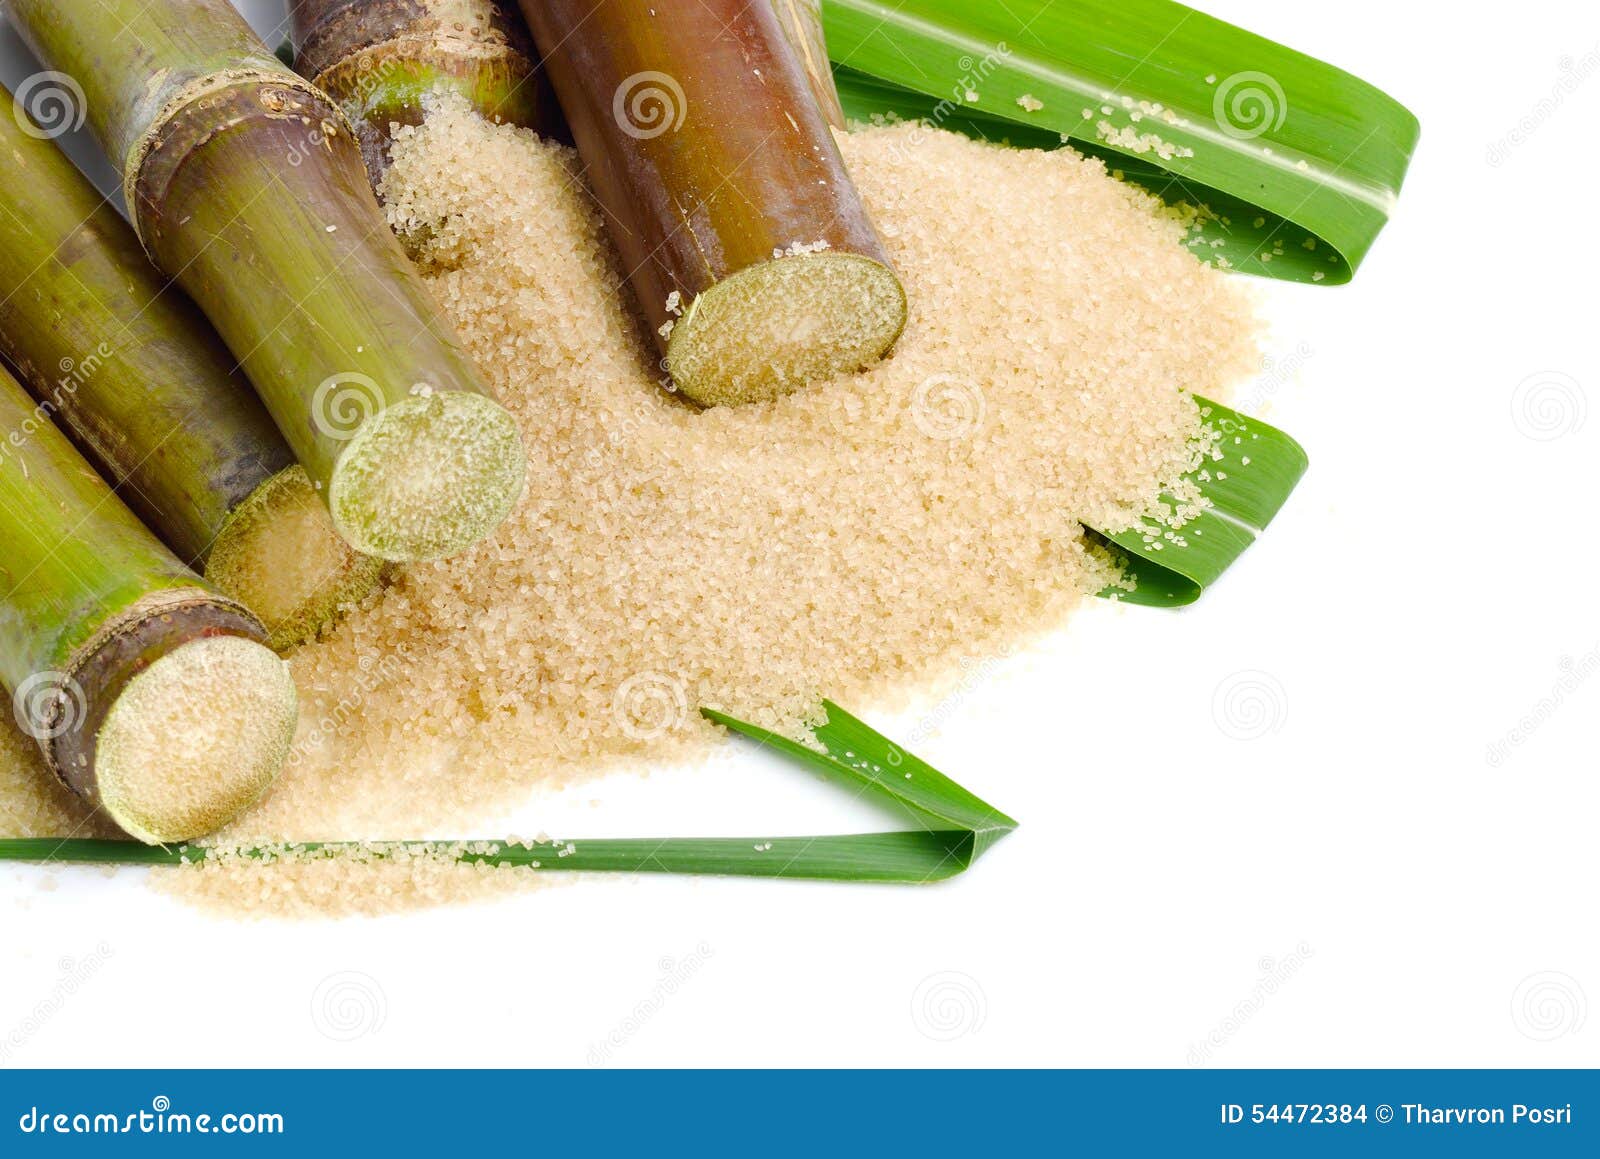 Сахарный тростник содержит 9. Сахарный тростник сахар. Сахар тростниковый. Сахар из тростника. Тростниковый сахар на белом фоне.